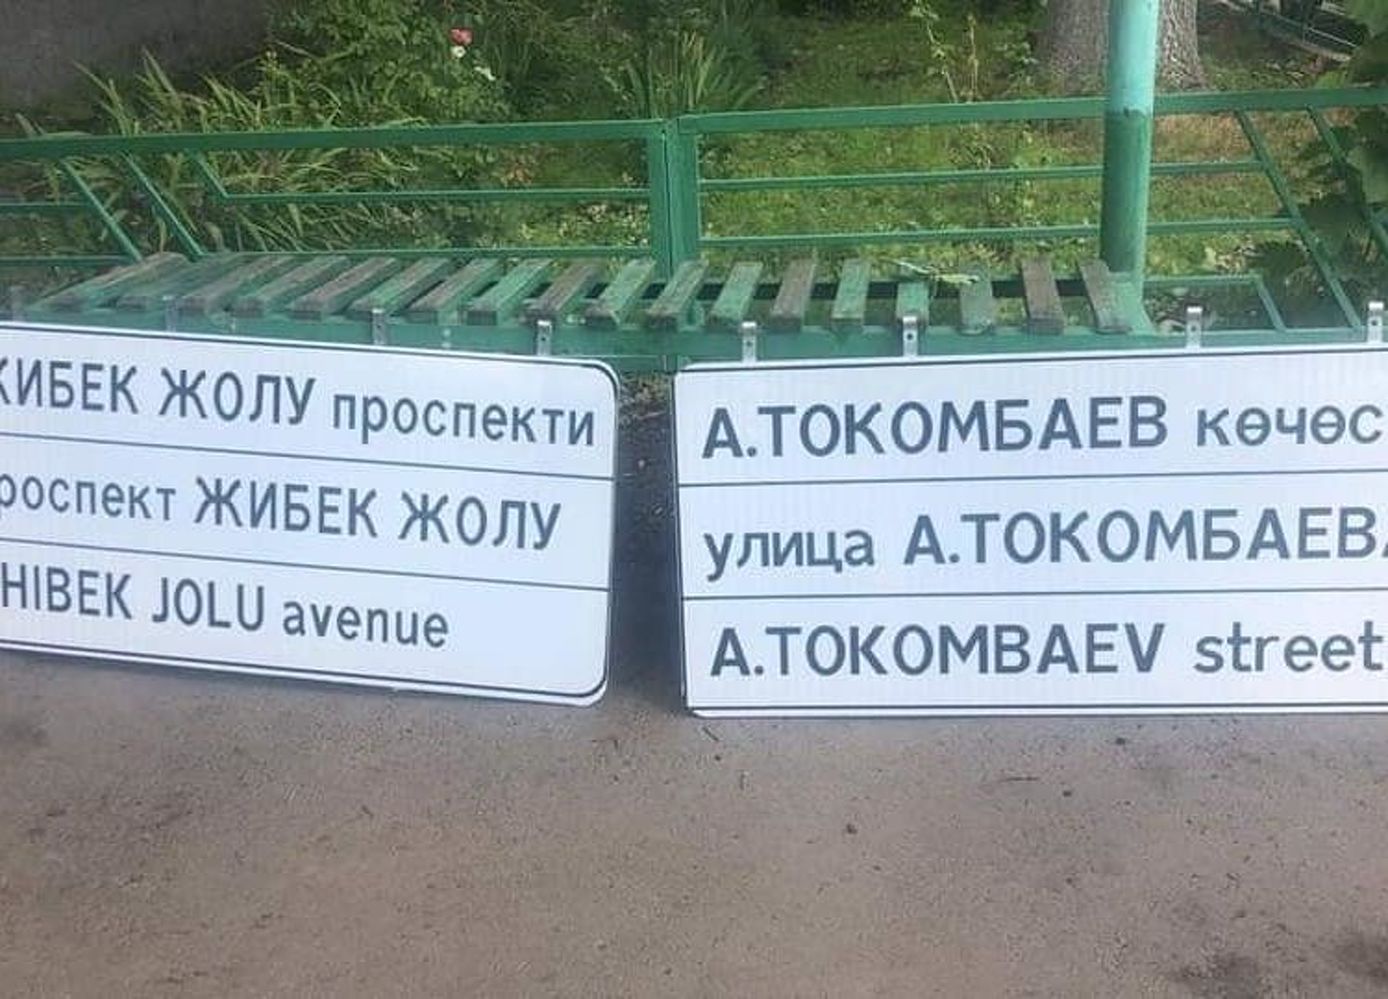 Бишкекглавархитектура: Аншлаги с ошибками появились из-за сжатости сроков — Today.kg